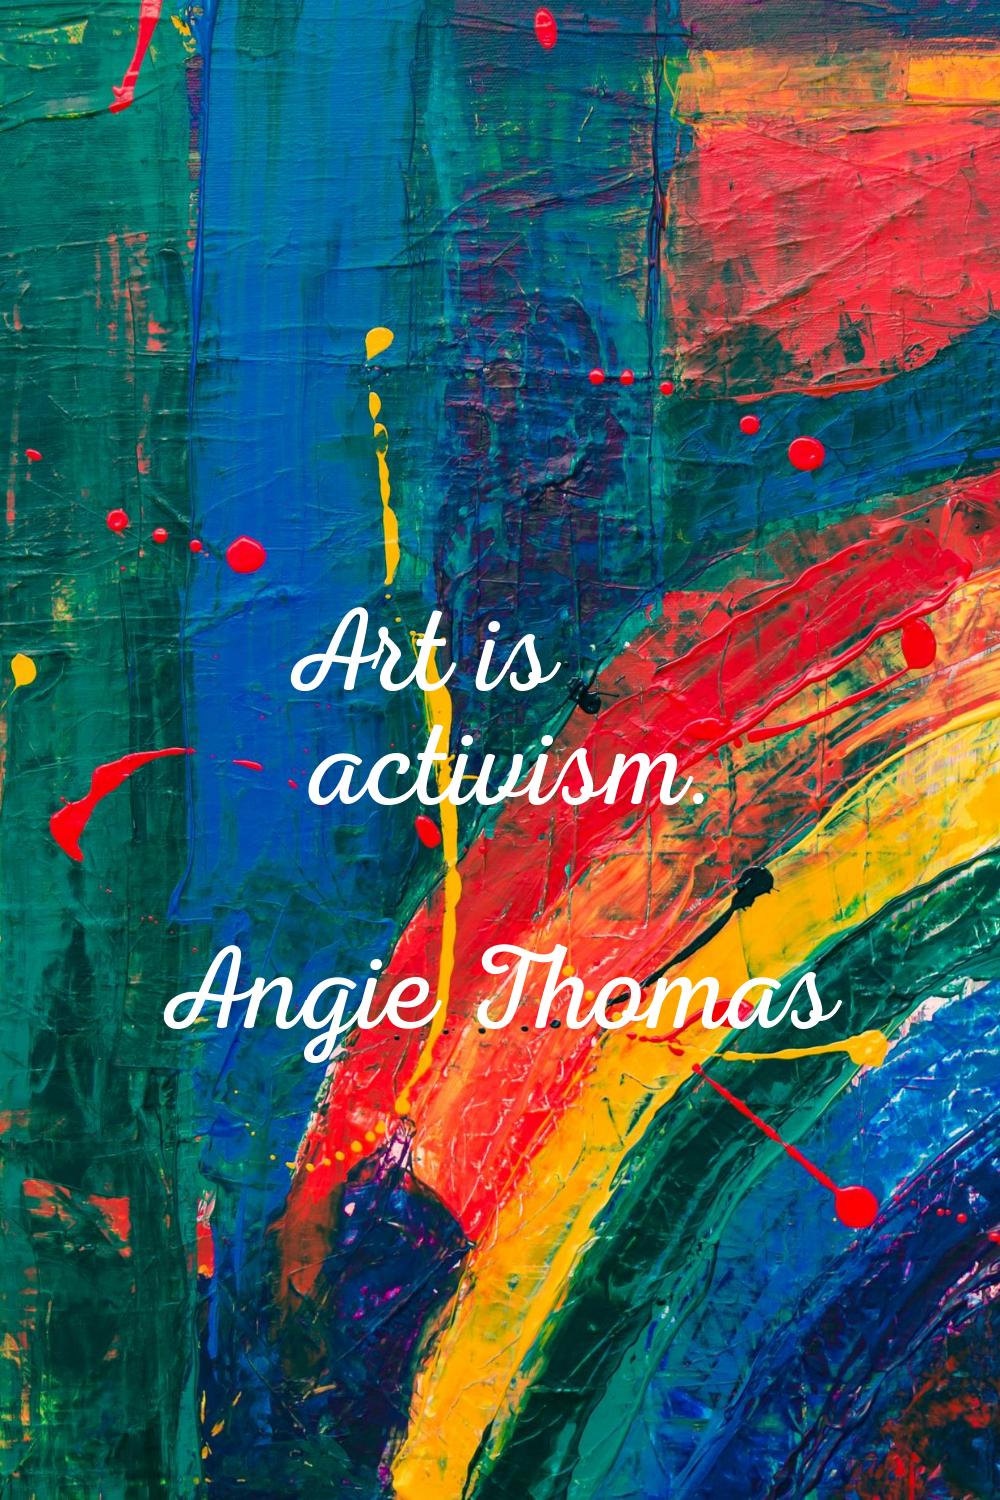 Art is activism.